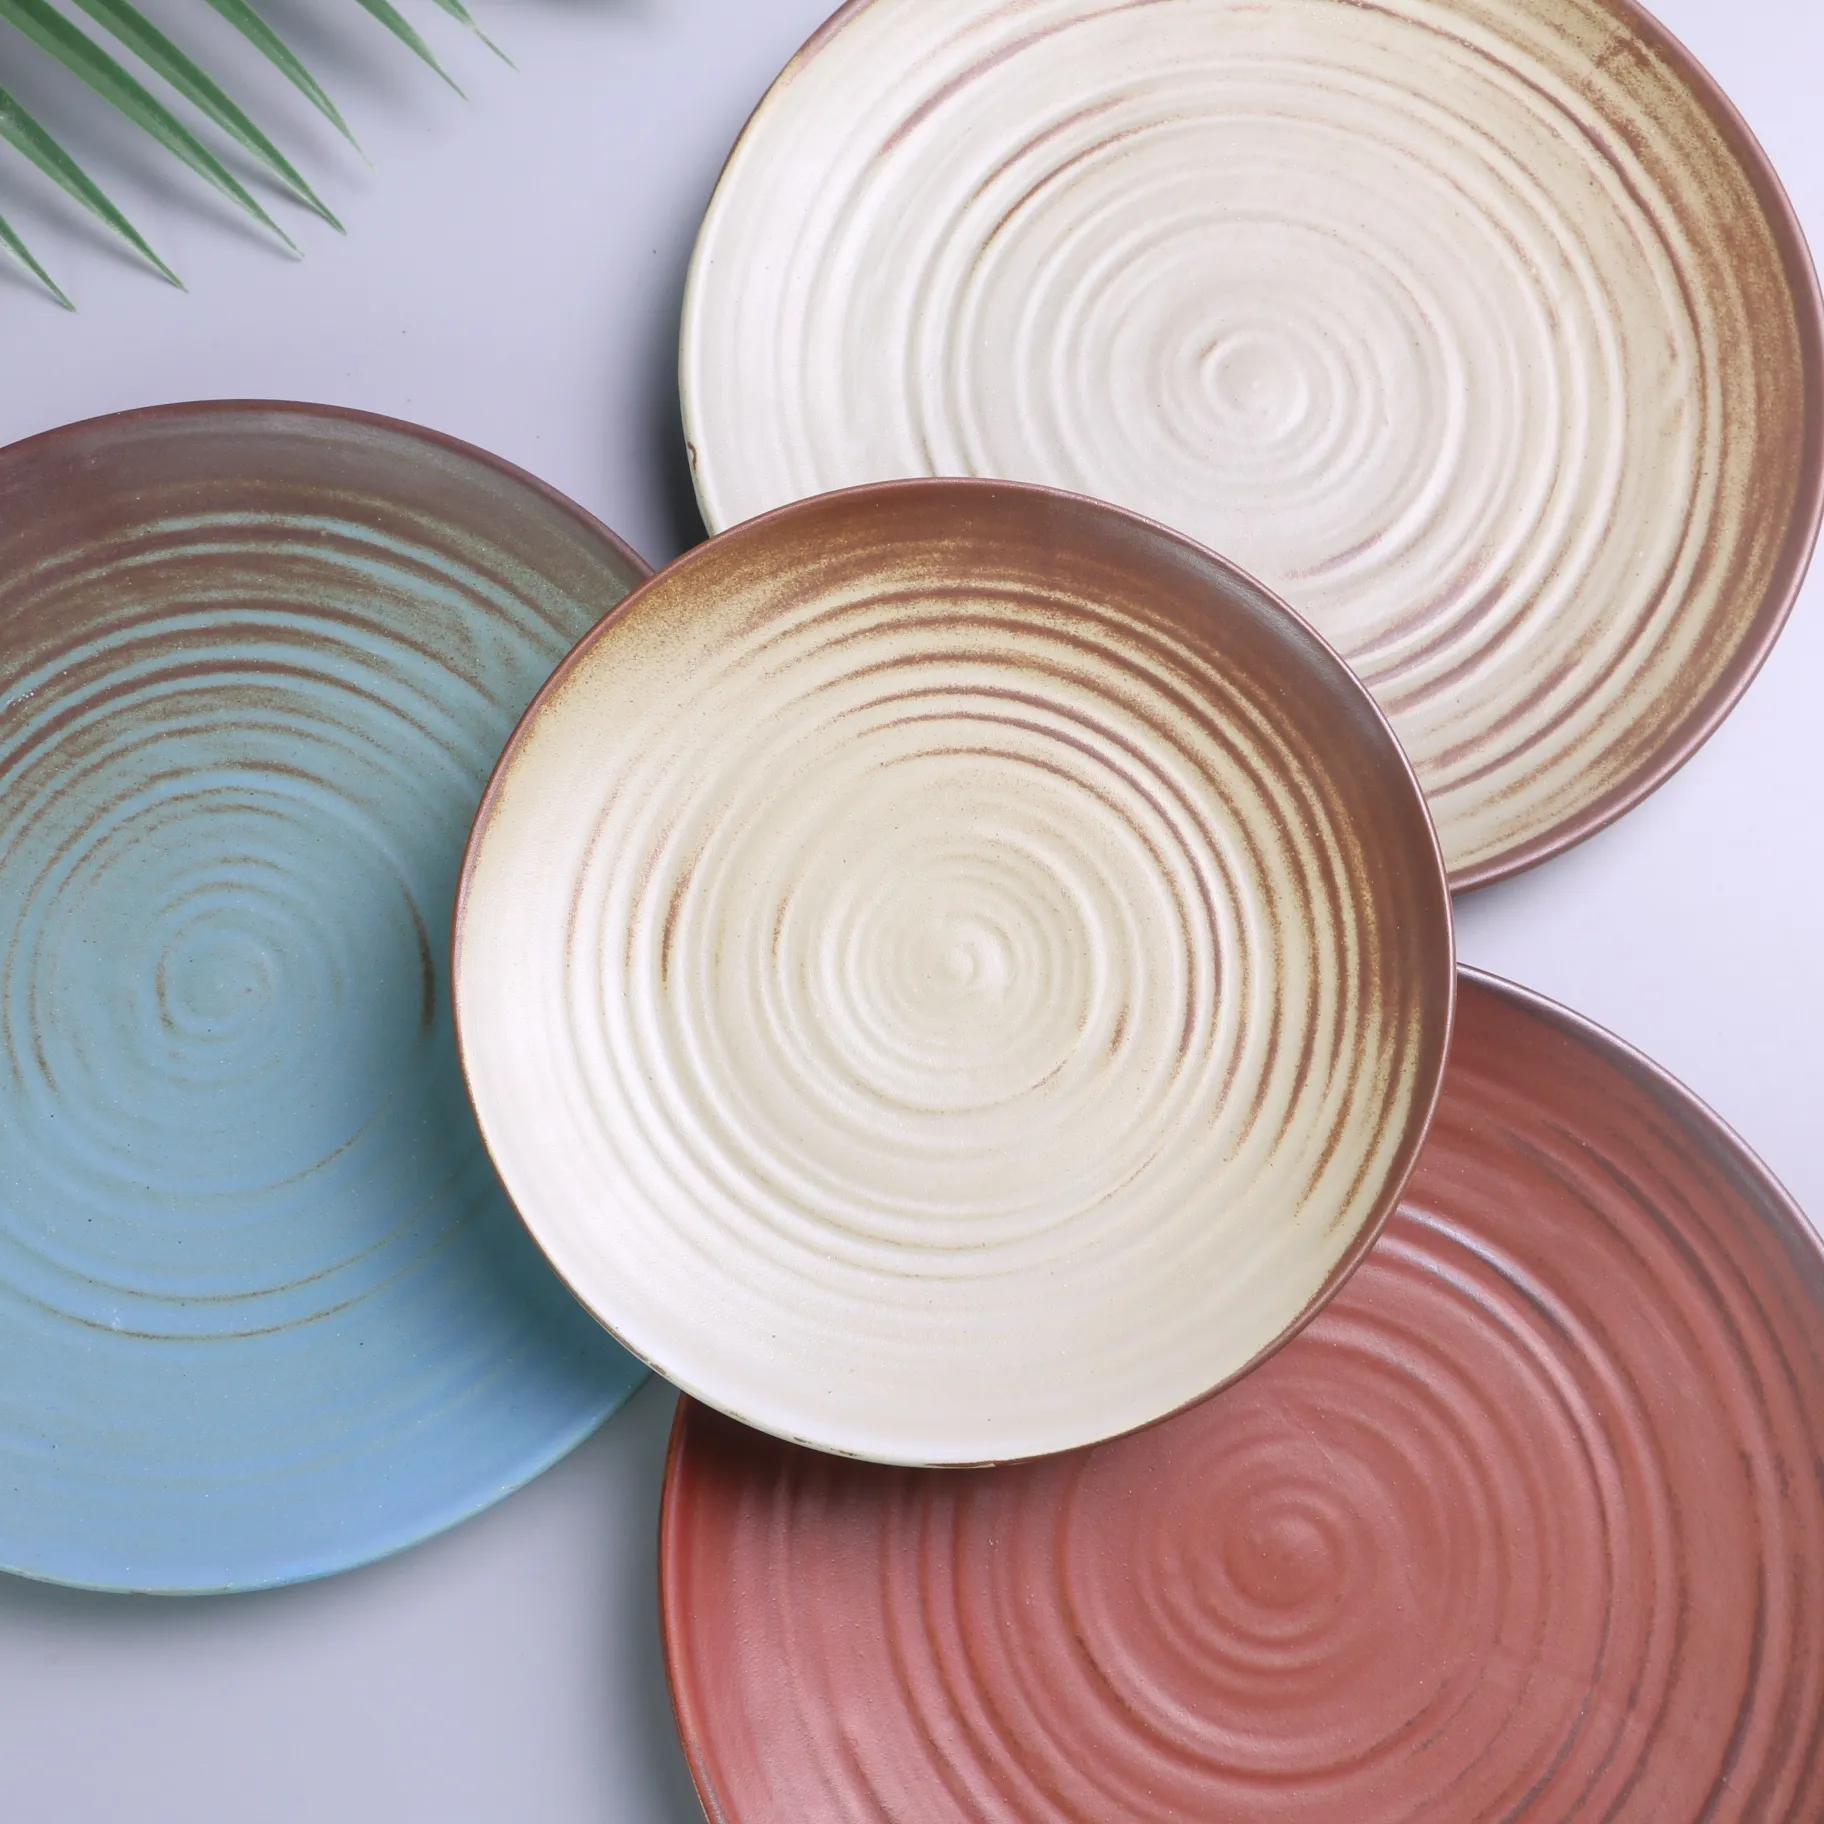 Venta al por mayor retro beige roscado decoración vajilla platos de cerámica platos redondos comida restaurante platos de porcelana platos de cena